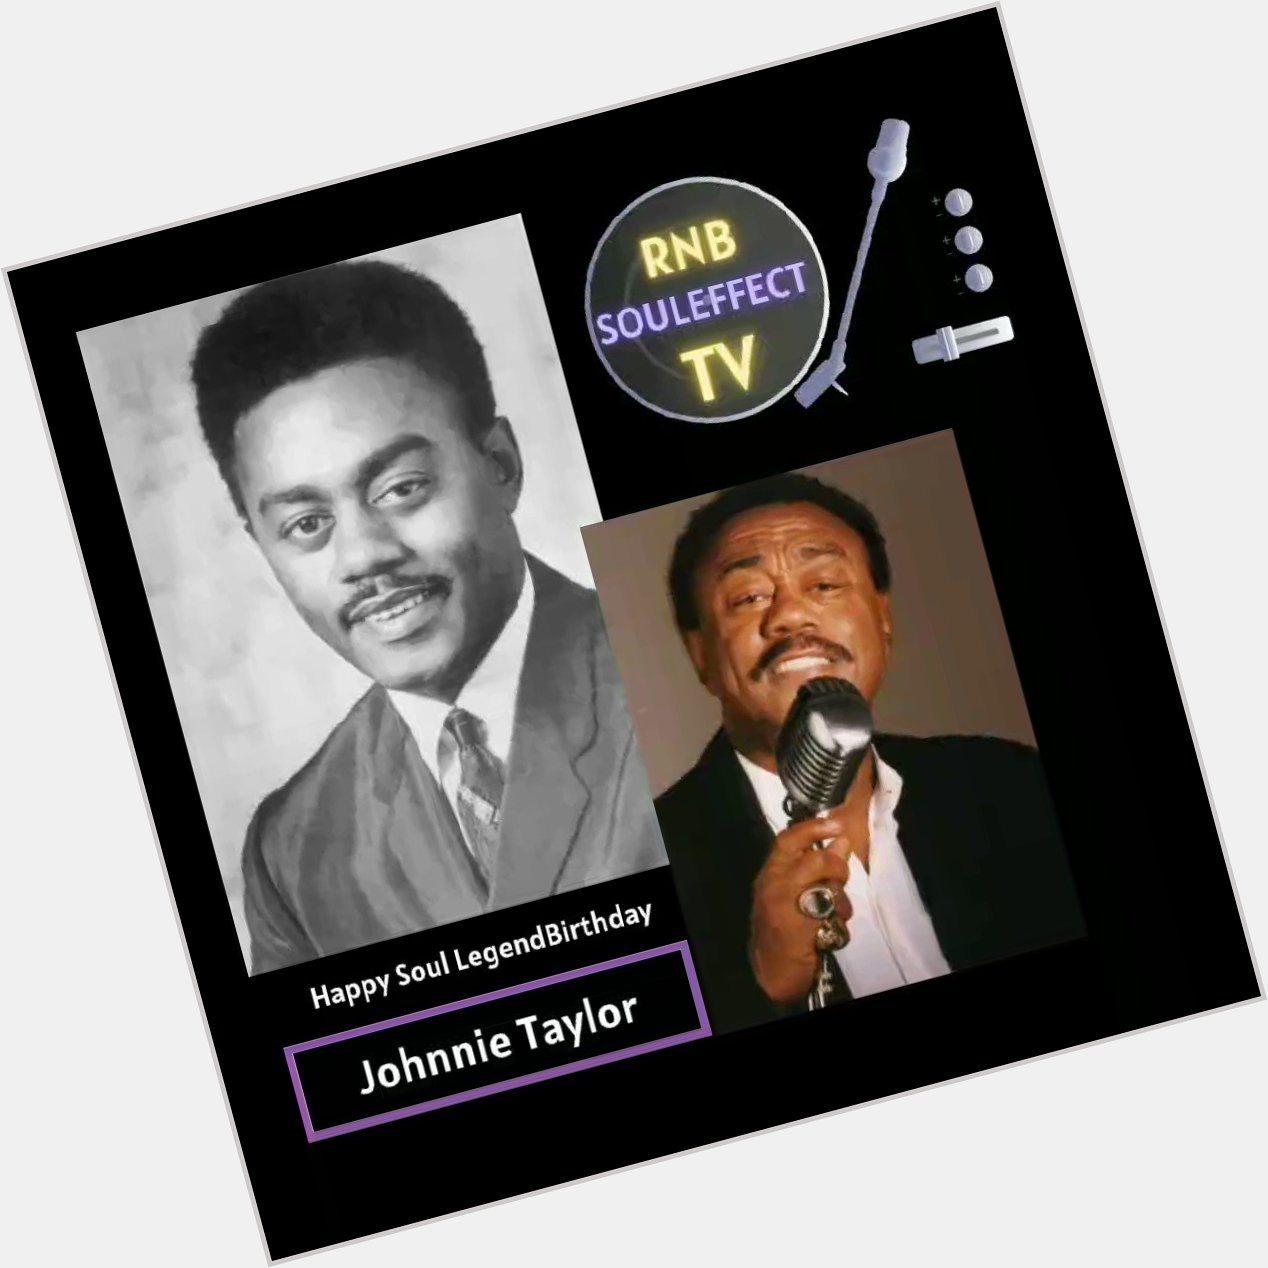 Happy Soul Legend Birthday 
Johnnie Taylor 